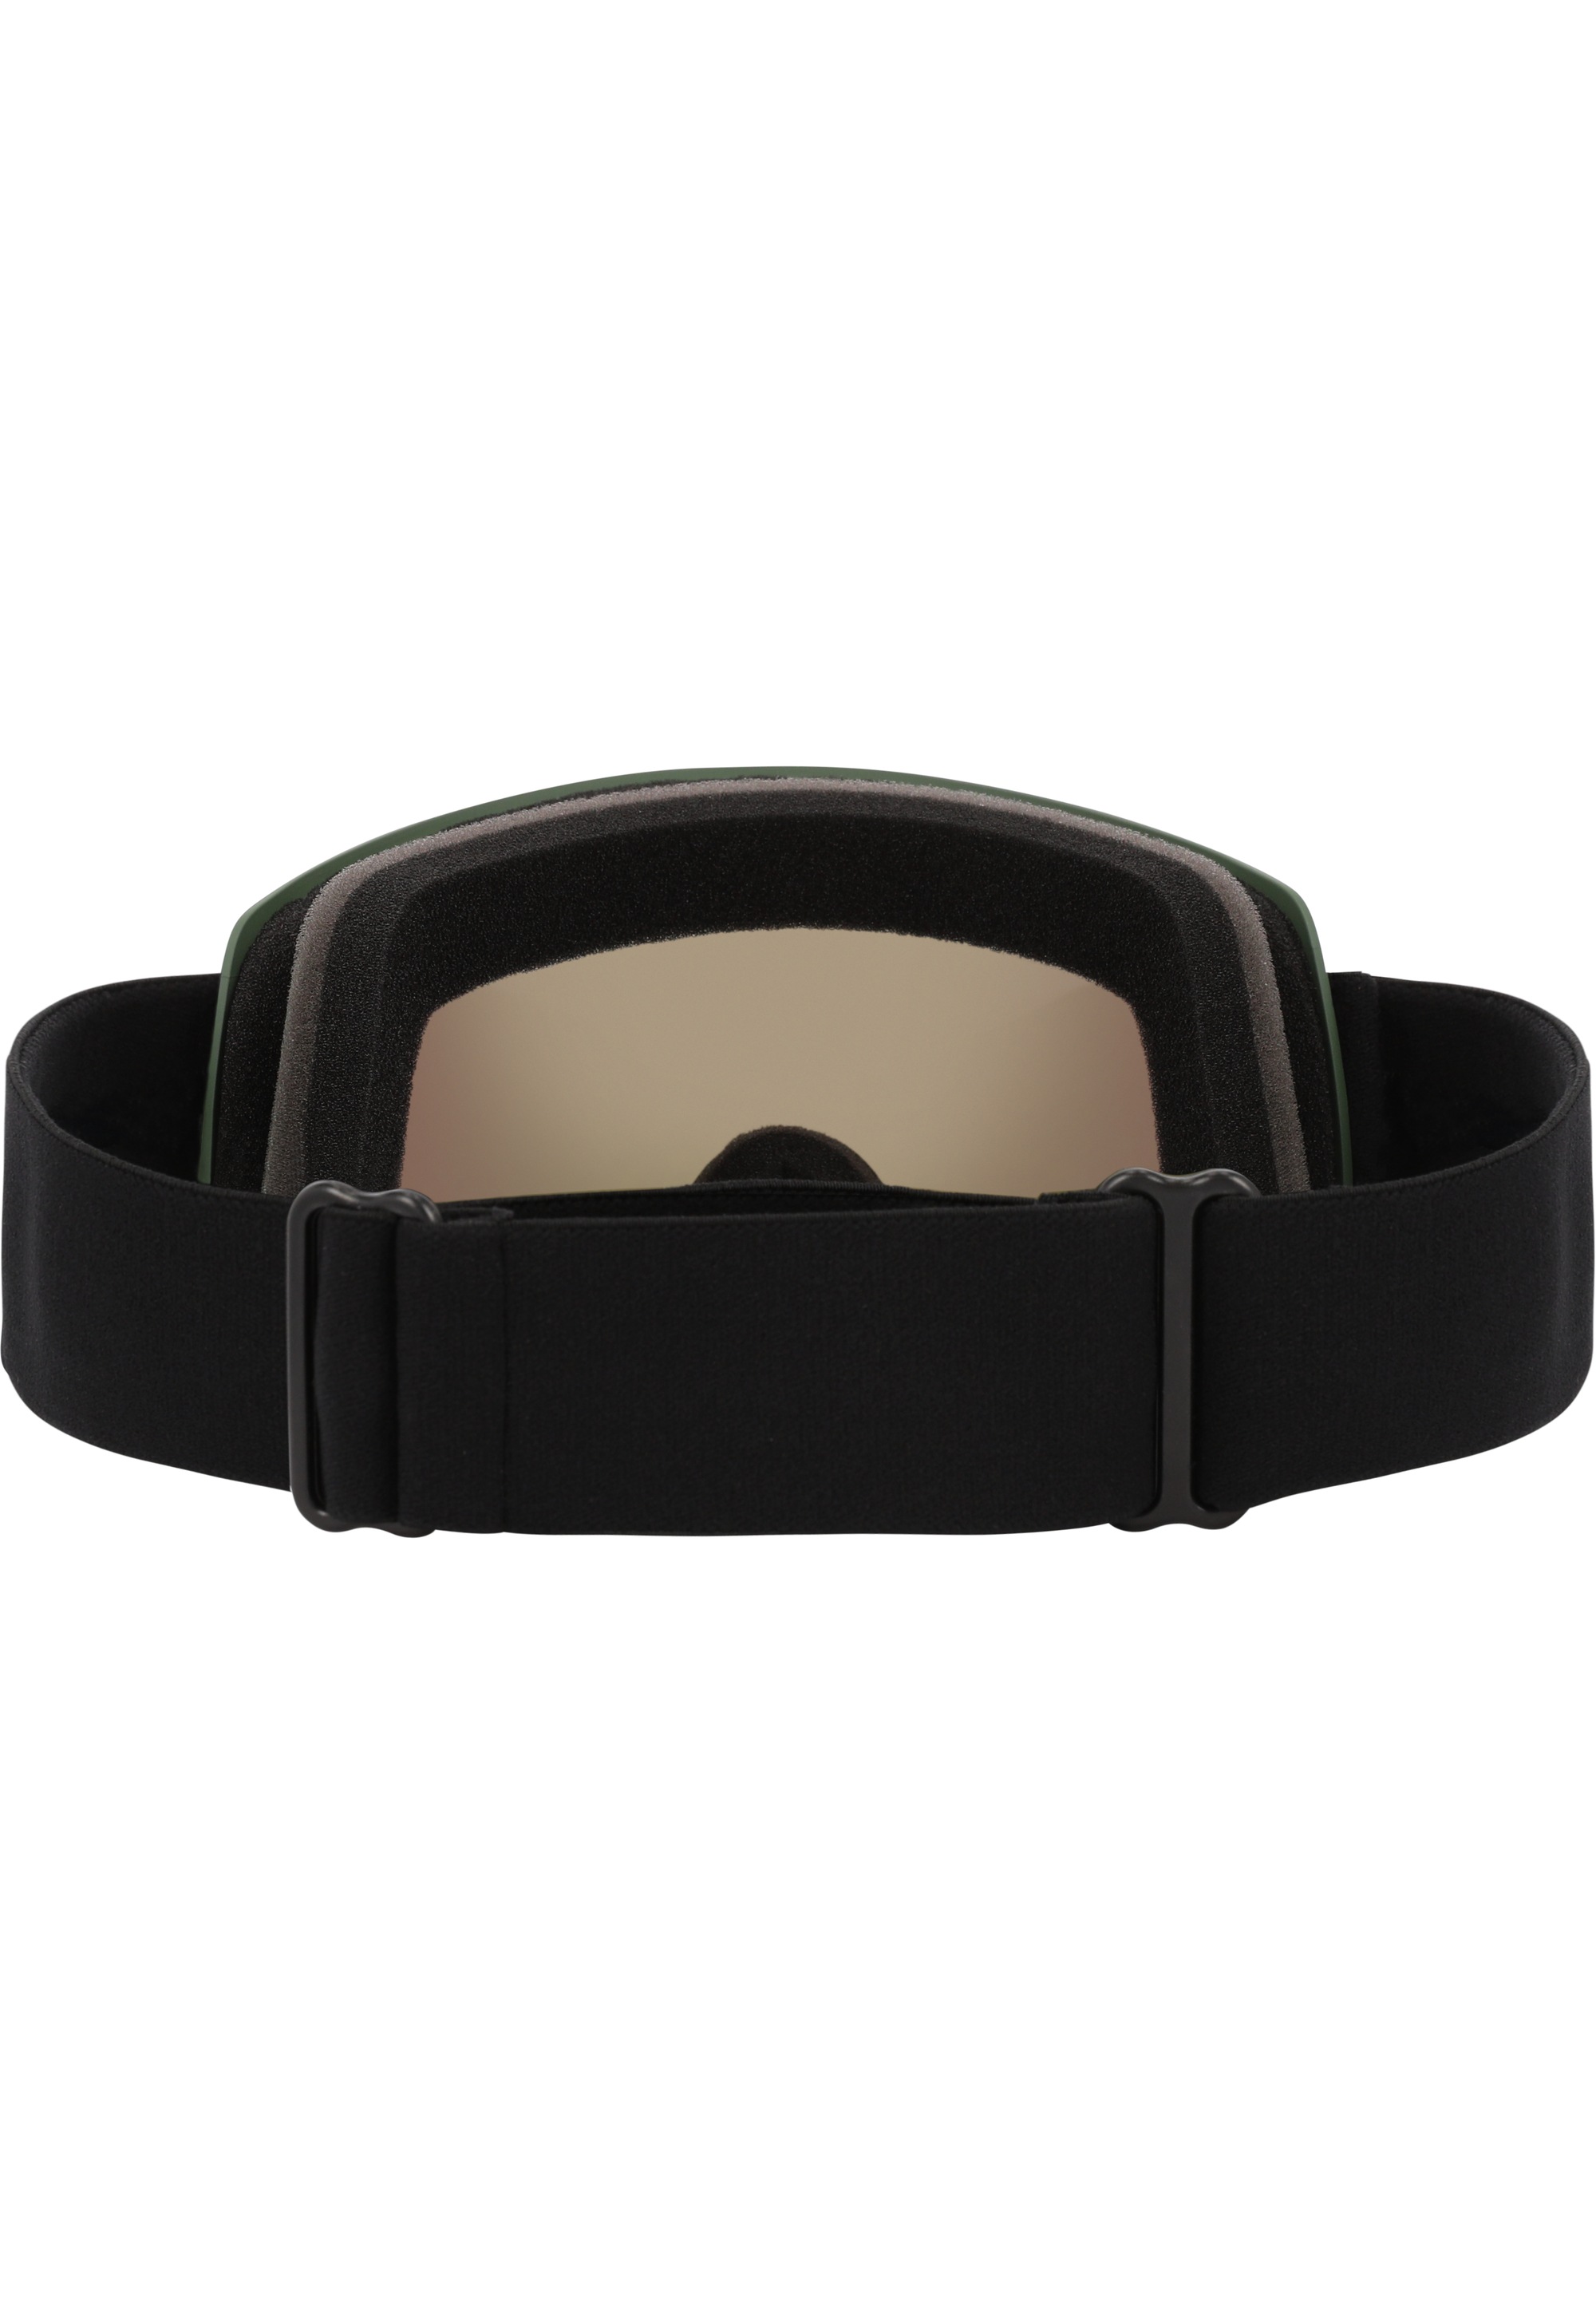 WHISTLER Skibrille »WS5100«, mit UV-Schutz und Anti Fog-Funktion